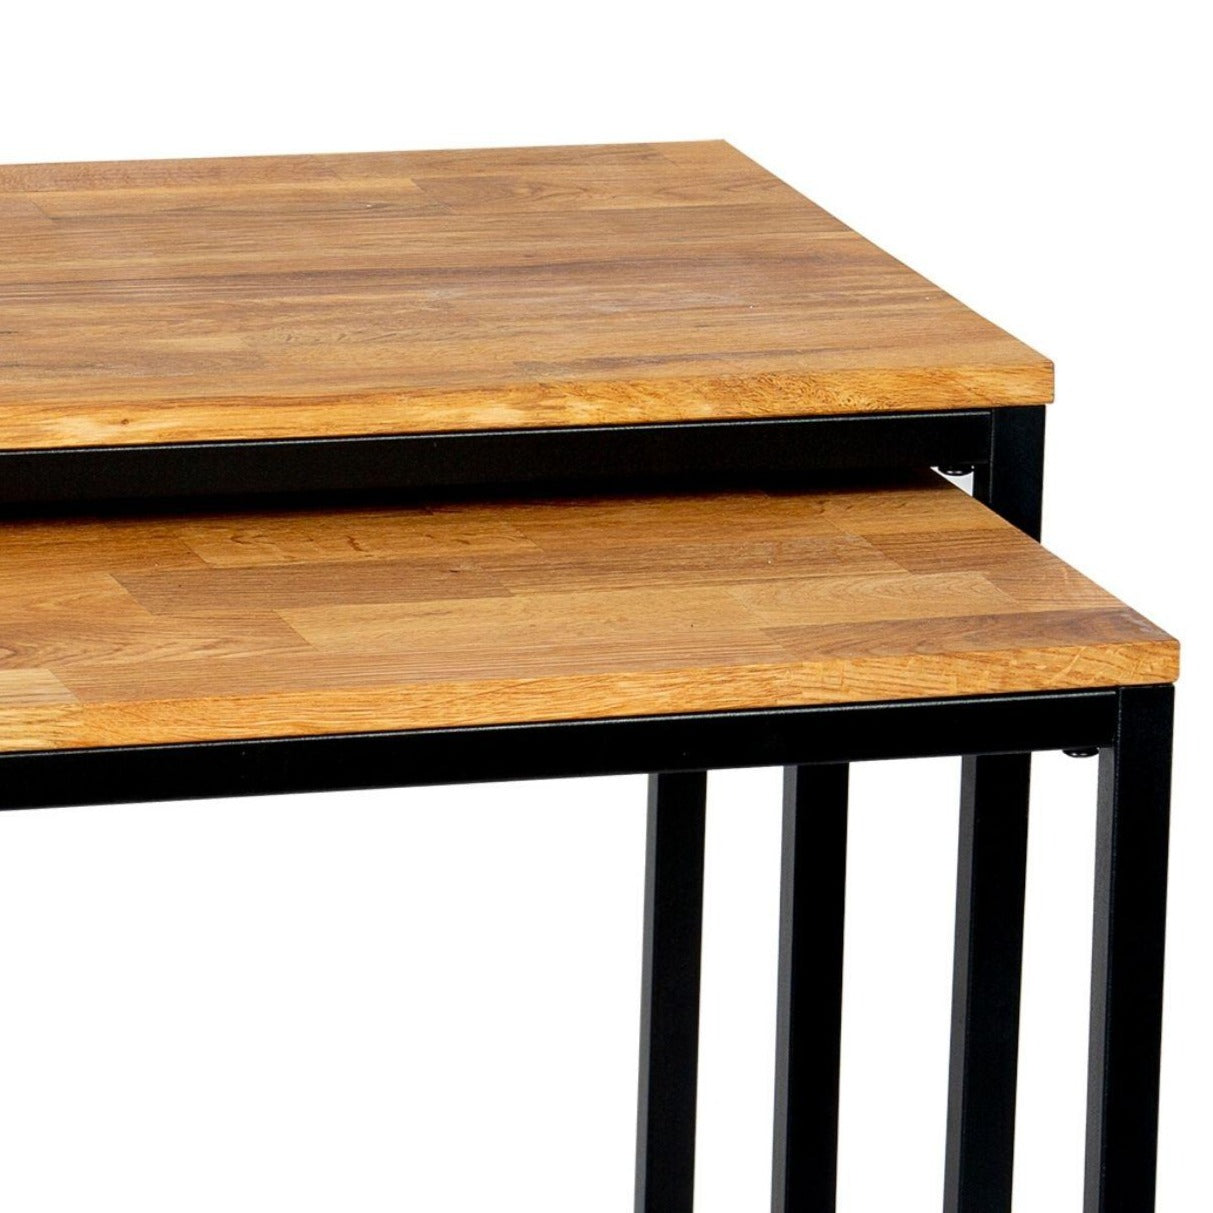 Oak Wood Side Table Set (x2)